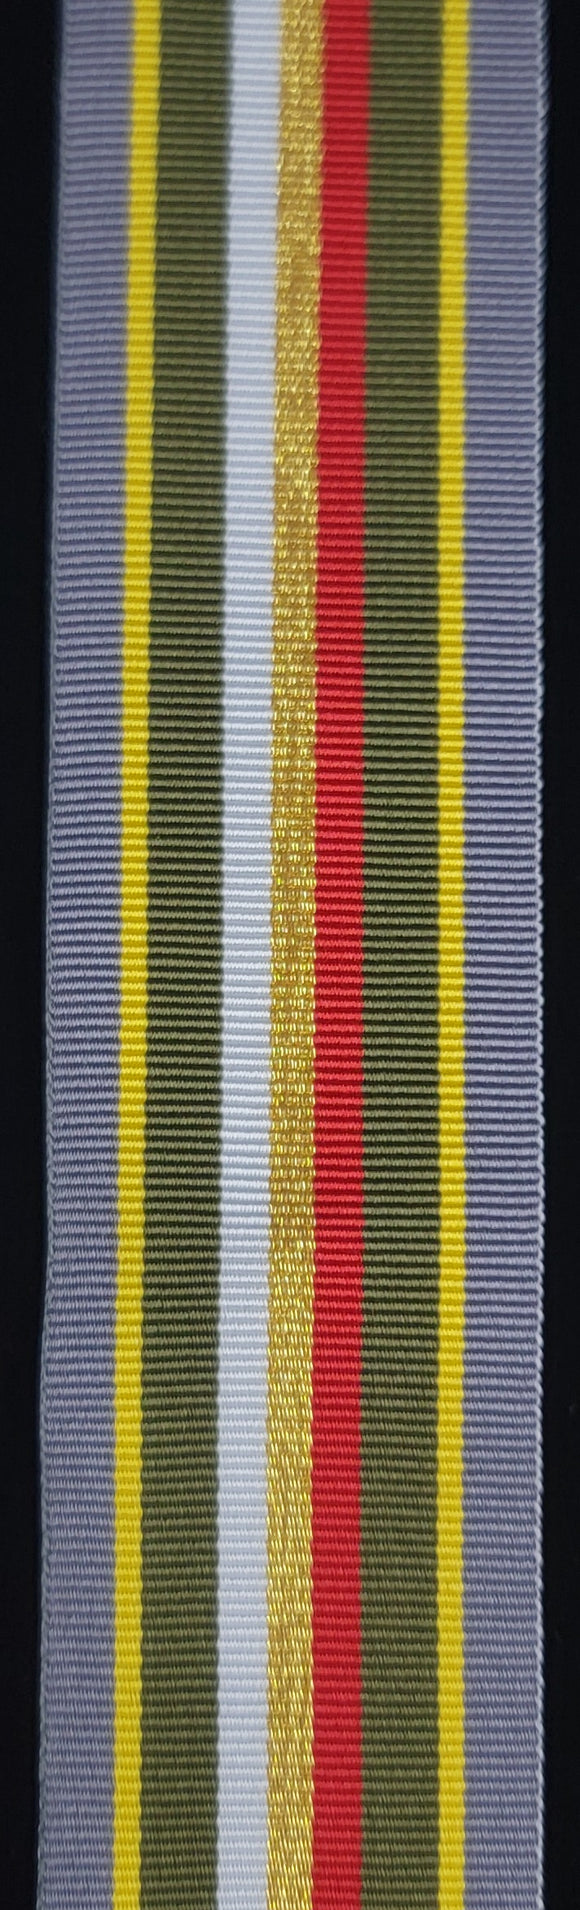 Ribbon for Ribbon Bar, Polish Army Medal (Gold Grade)